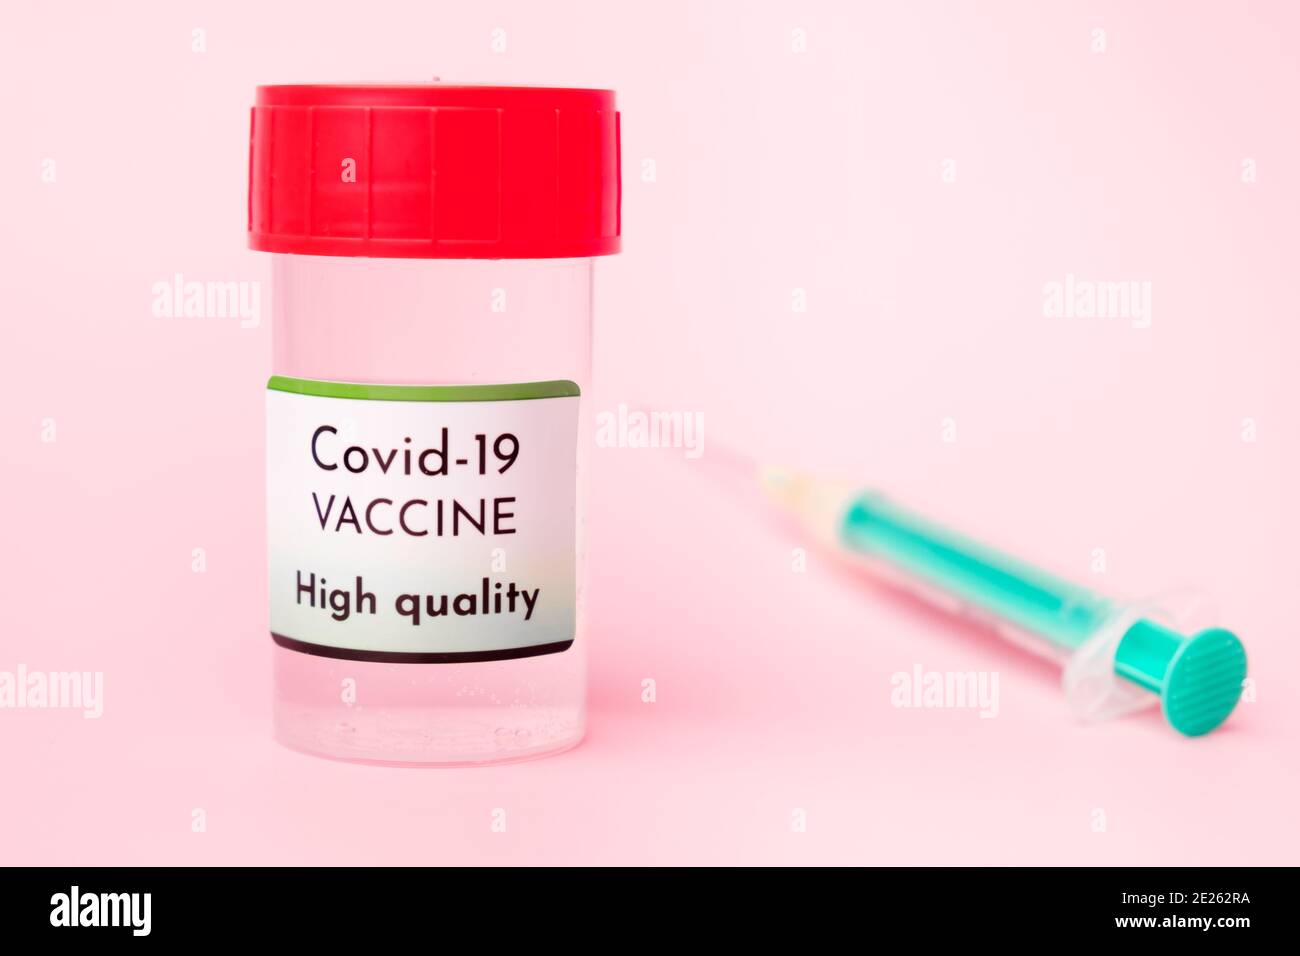 Vacuna Covid-19 de alta calidad en botella y jeringa desechable para inyección sobre fondo rosa. Prevención del coronavirus, Sars-CoV-2. Foto de stock